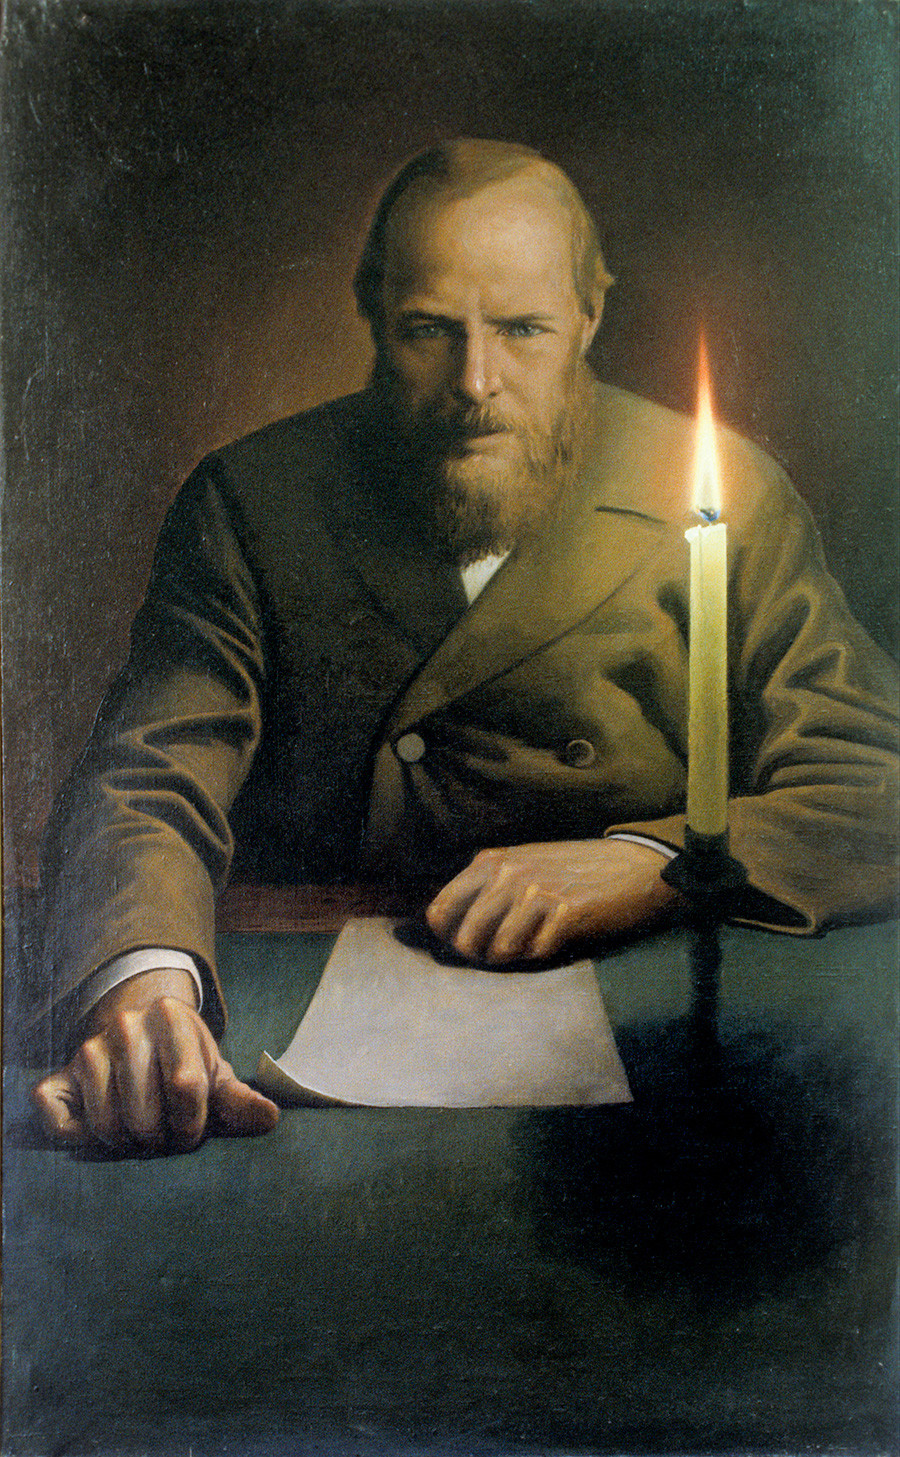 Retrato de Fiódor Dostoievski, por Konstantin Vasilyev.
